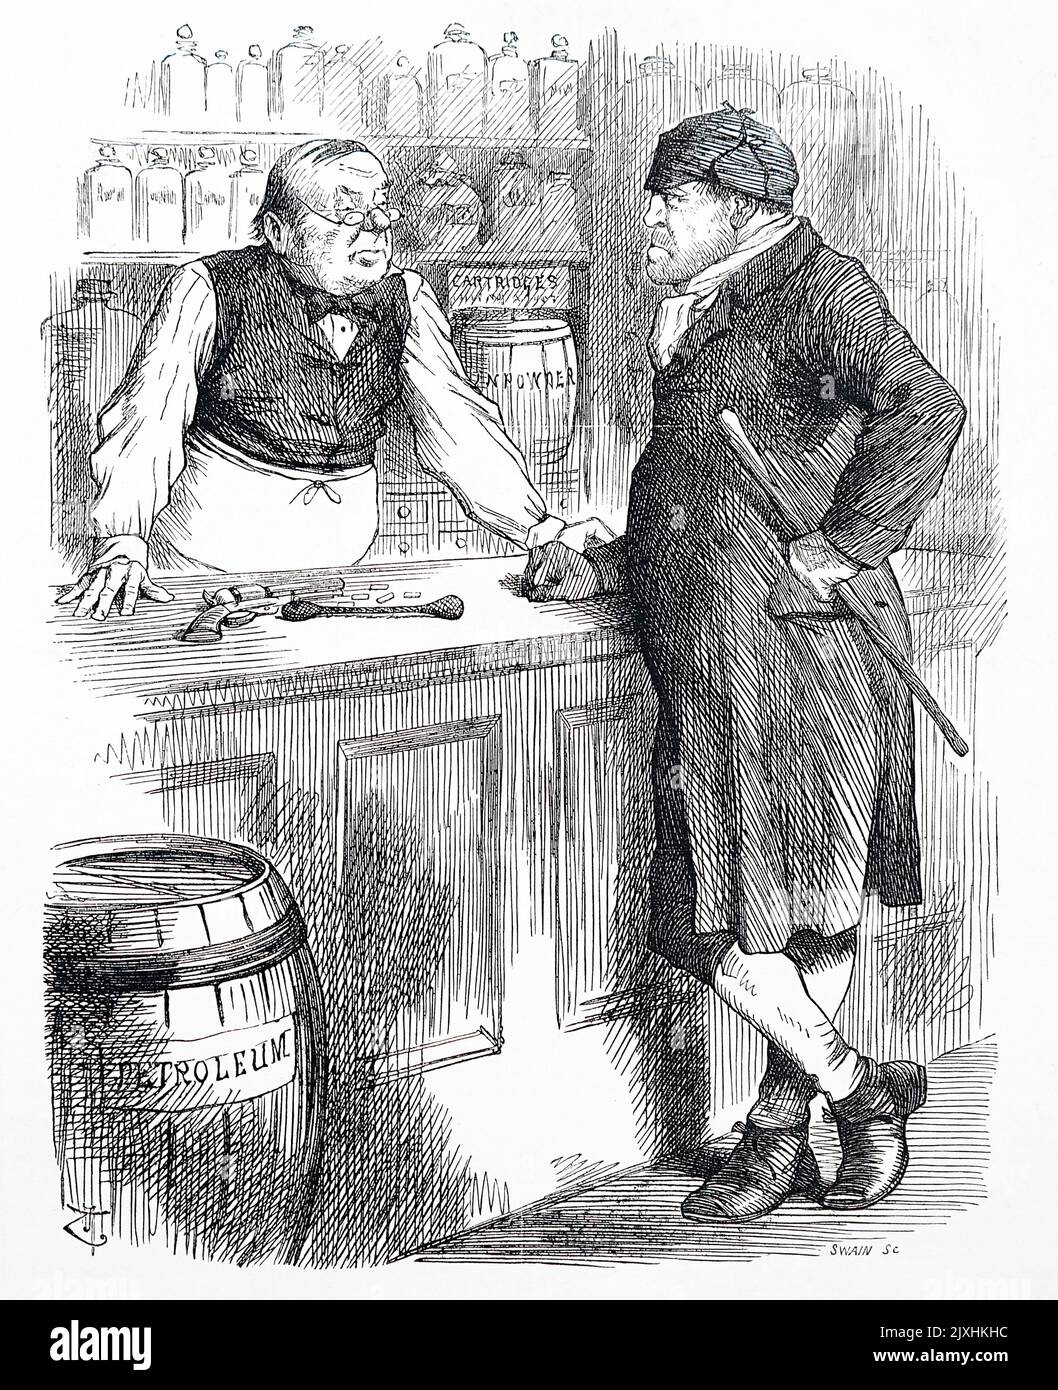 Karikatur, die Kritik an den Giften Akt. Illustriert von John Tenniel (1820-1914), einem englischen Illustrator, Grafikhumoristen und politischen Karikaturisten. Datiert aus dem 19.. Jahrhundert Stockfoto